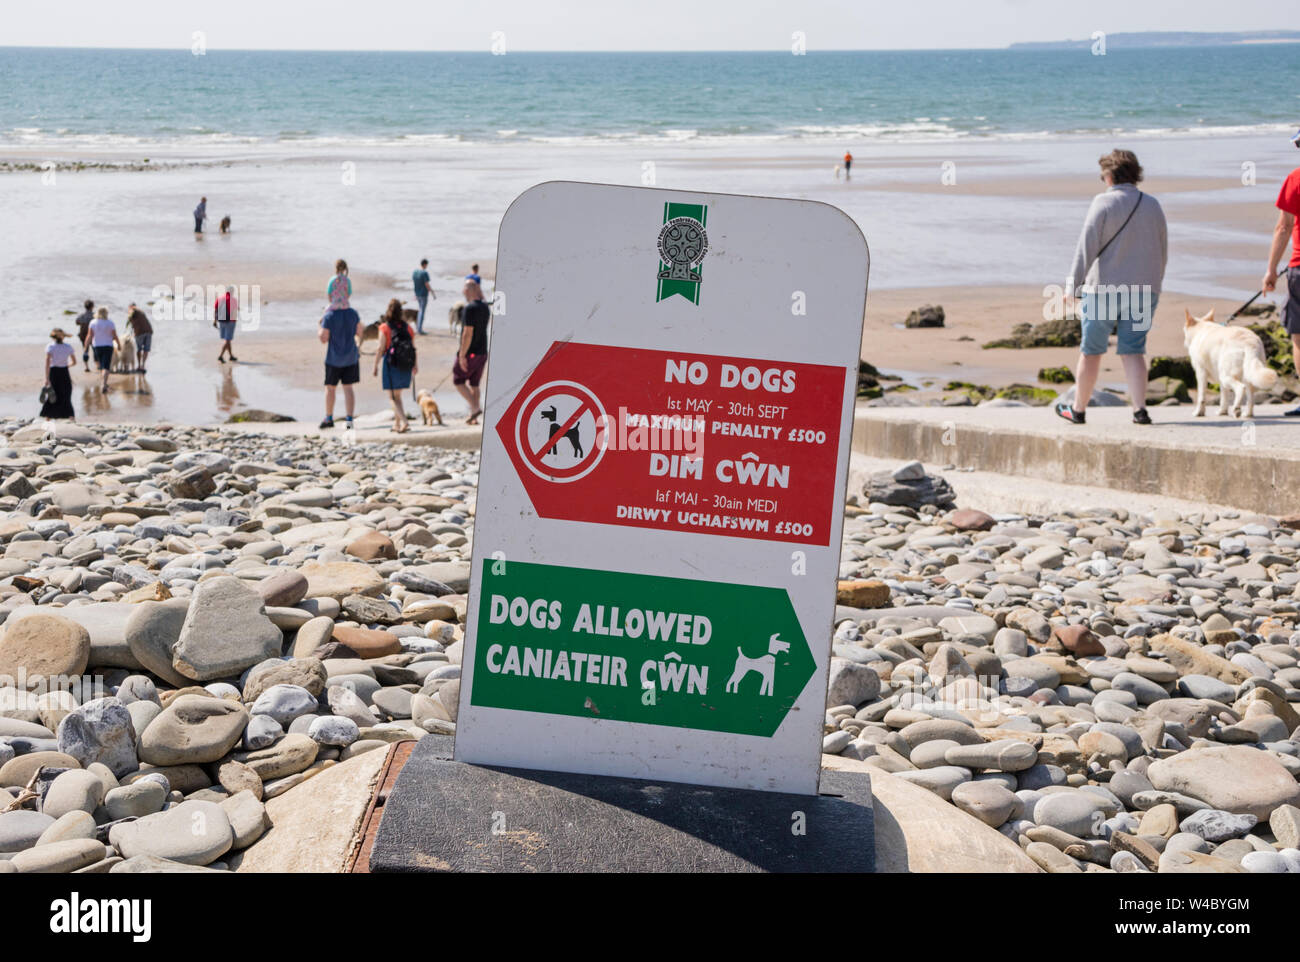 Una spiaggia britannico con restrizioni di accesso per i cani, Gran Bretagna, Regno Unito Foto Stock